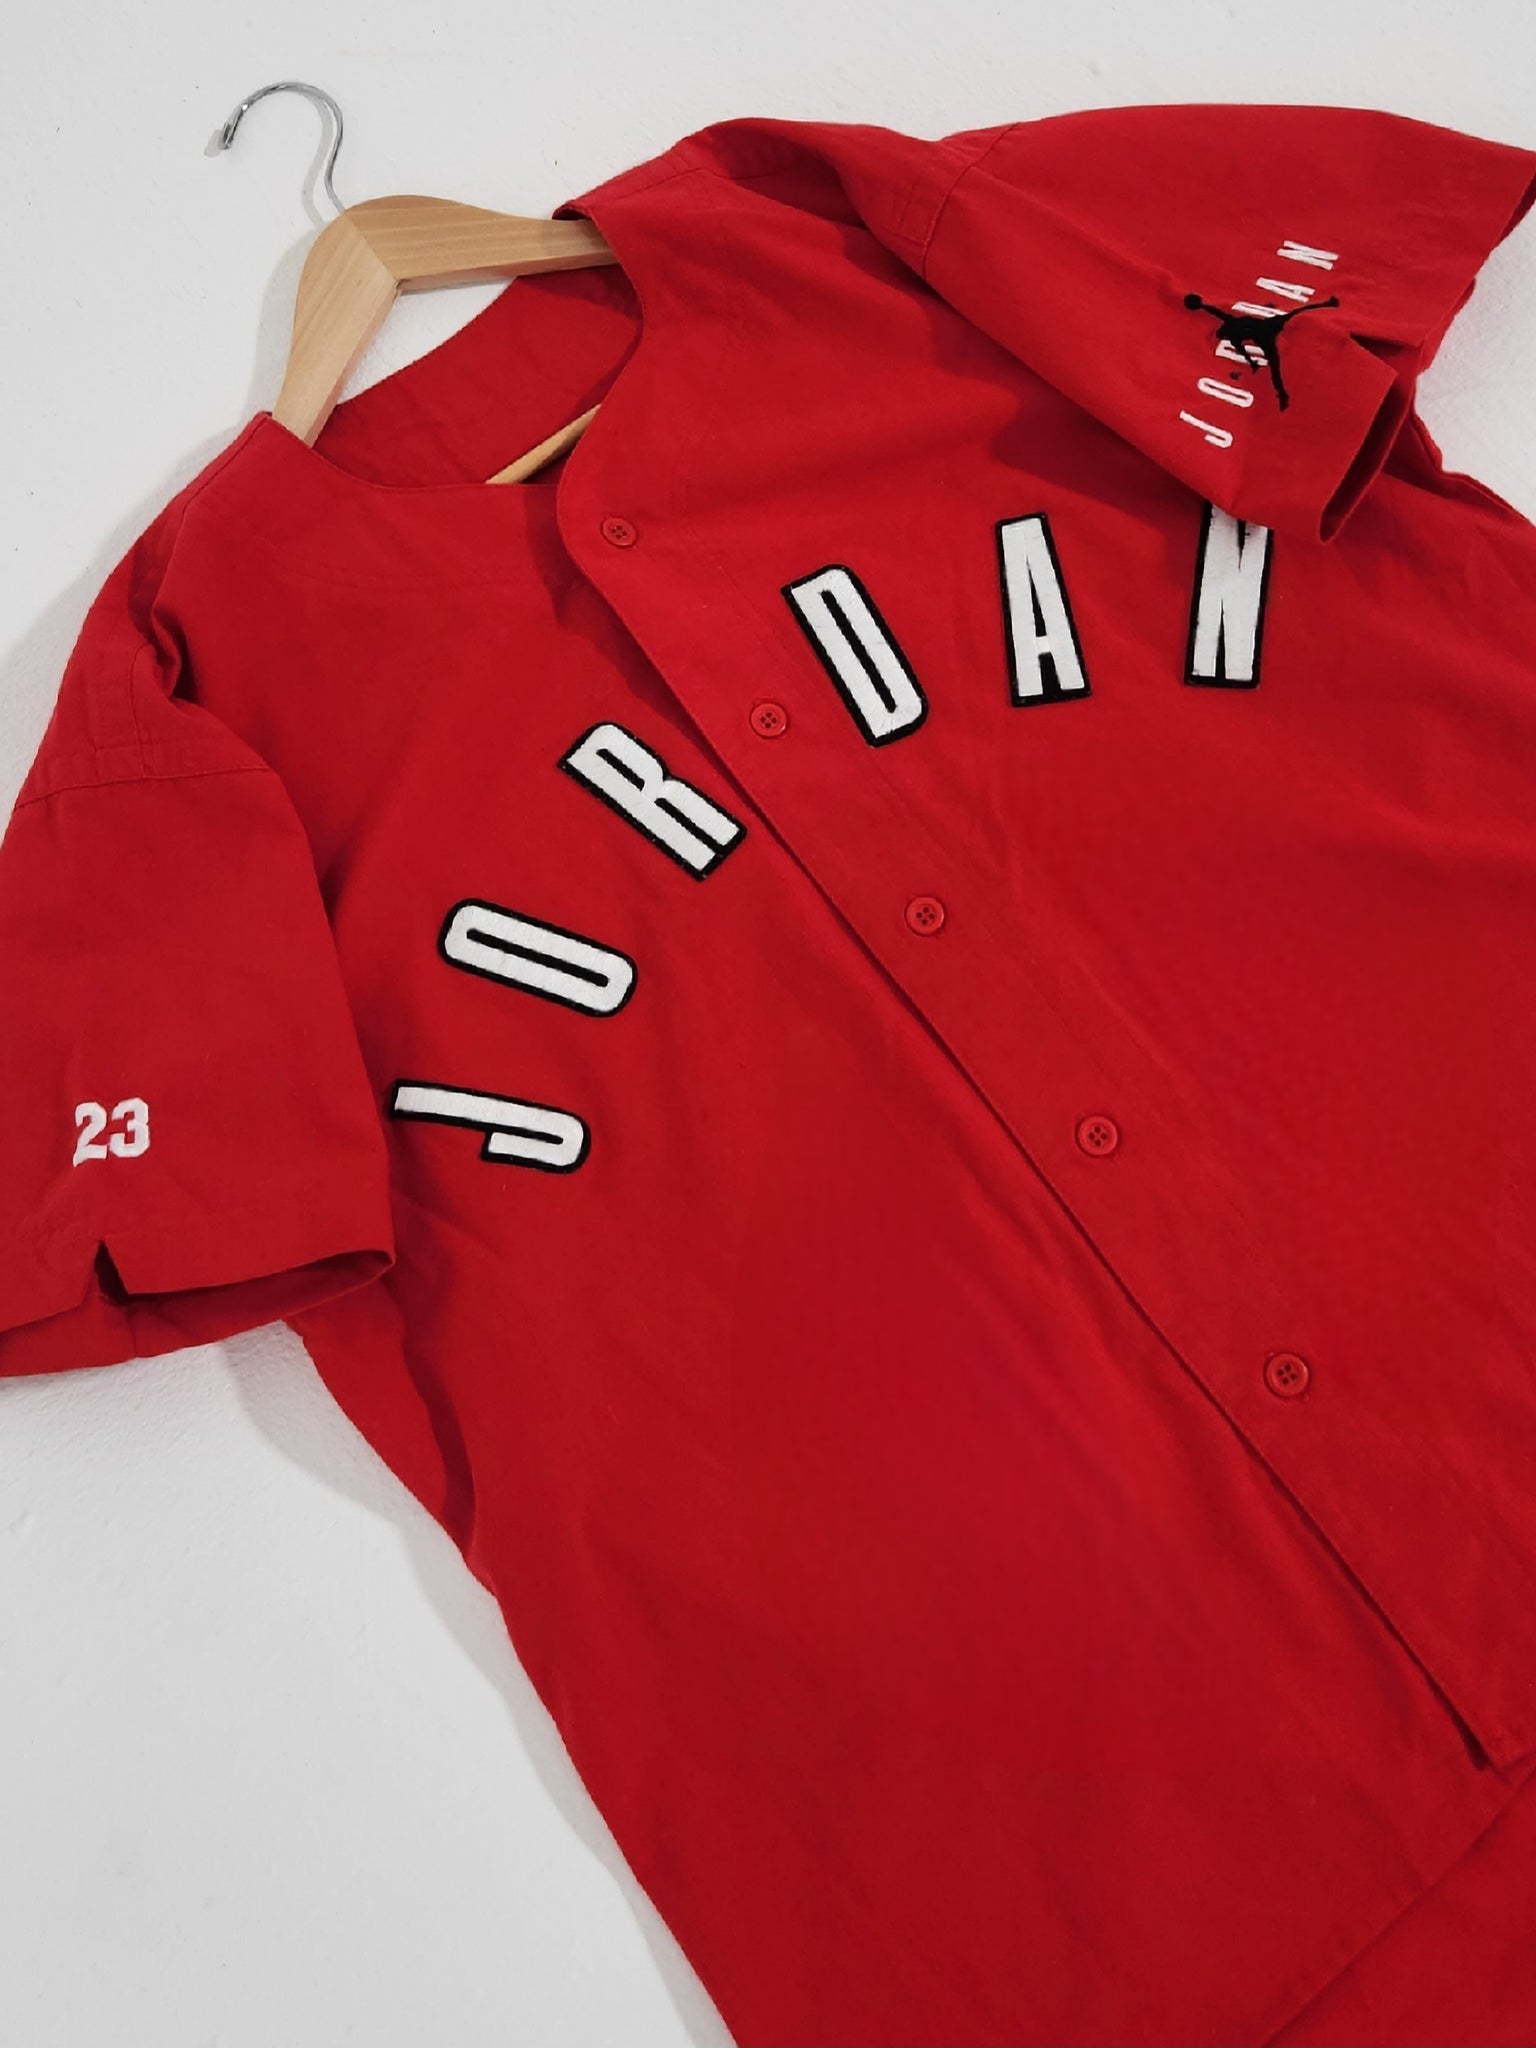 Nike Vintage Nike Jordan Red Baseball Jersey Top Button Up 23